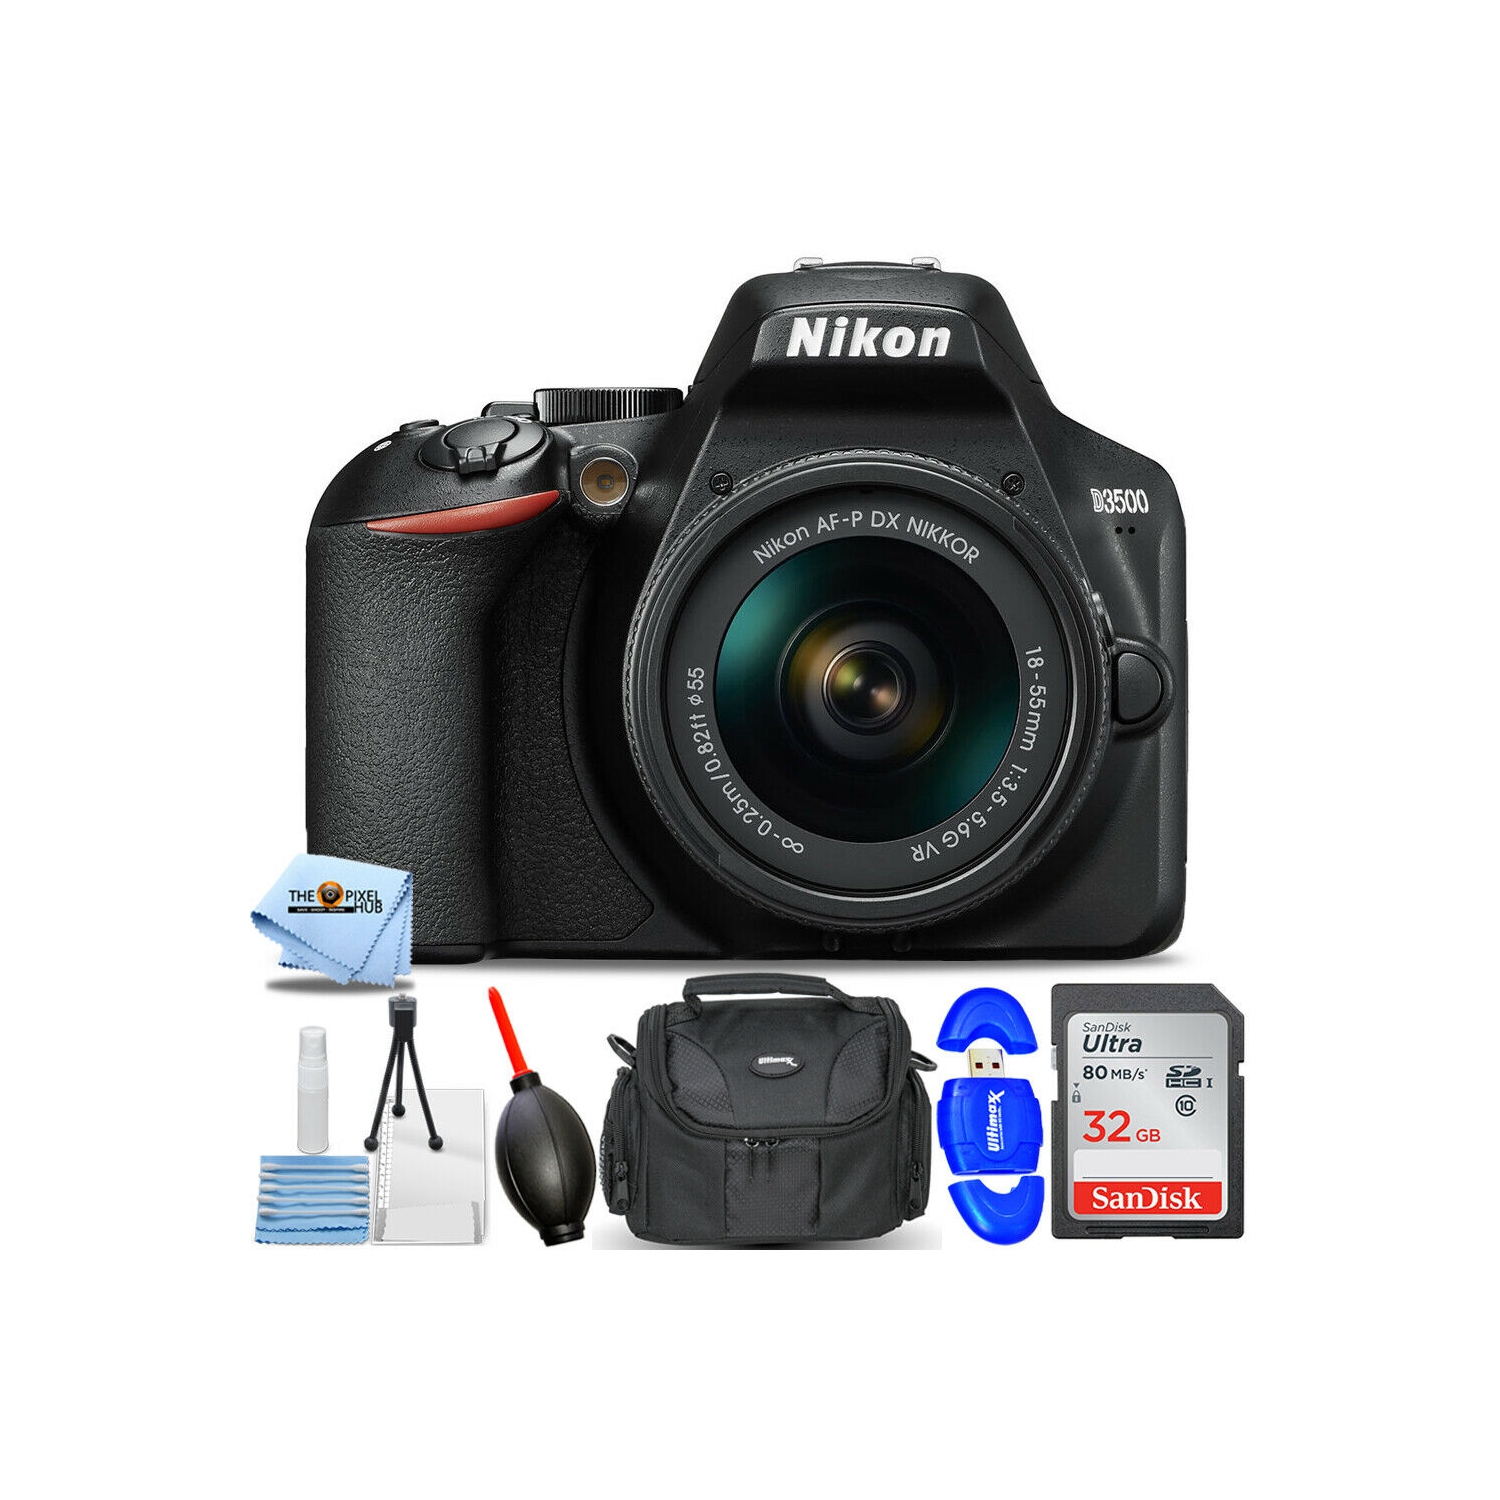 Nikon D3500 DSLR Camera with 18-55mm VR Lens 1590 - 7PC Accessory Bundle